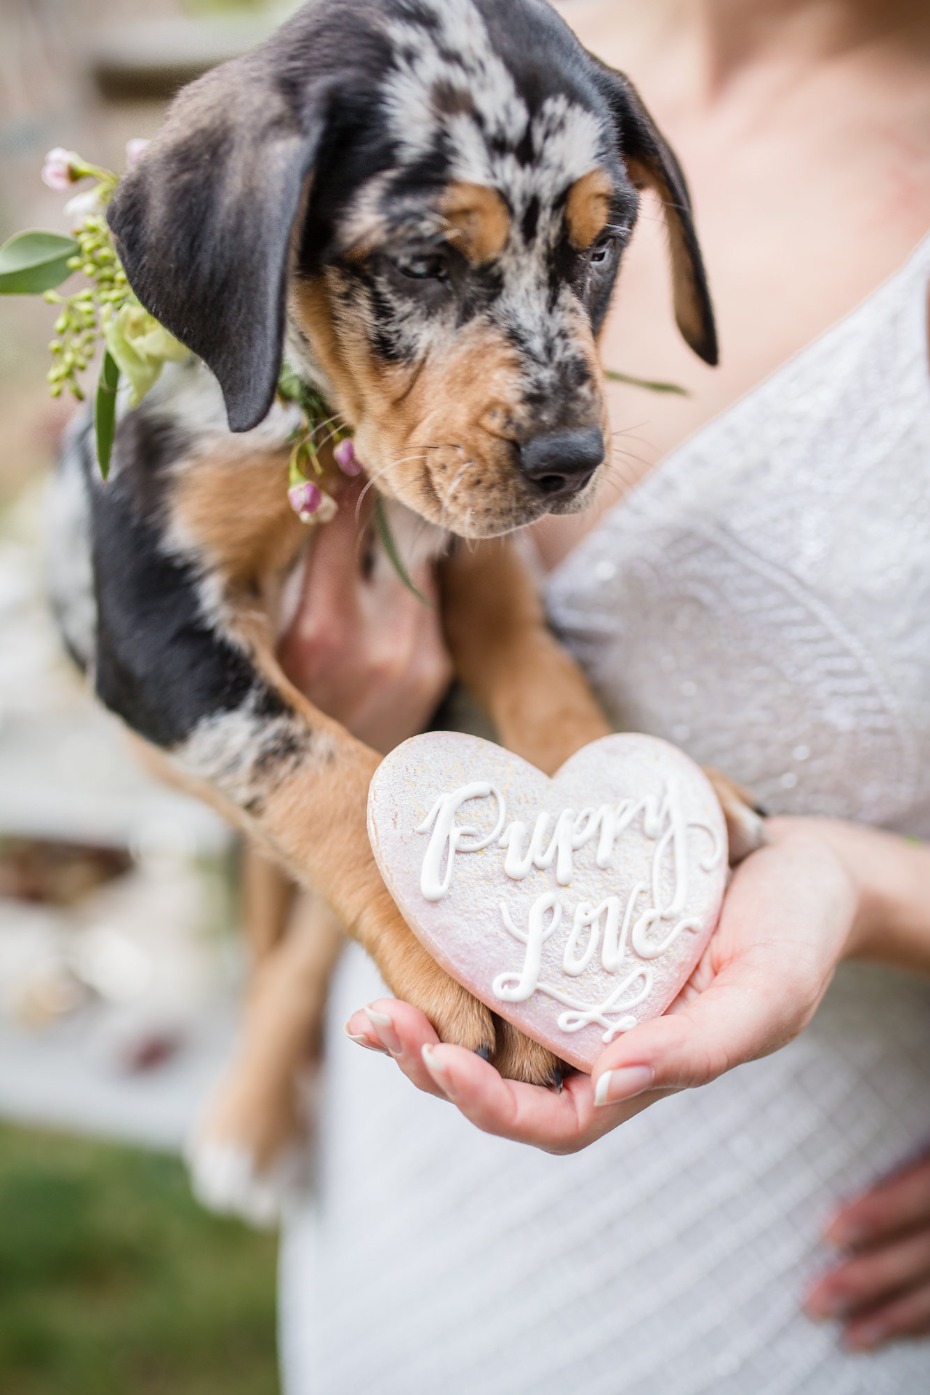 puppy love wedding ideas